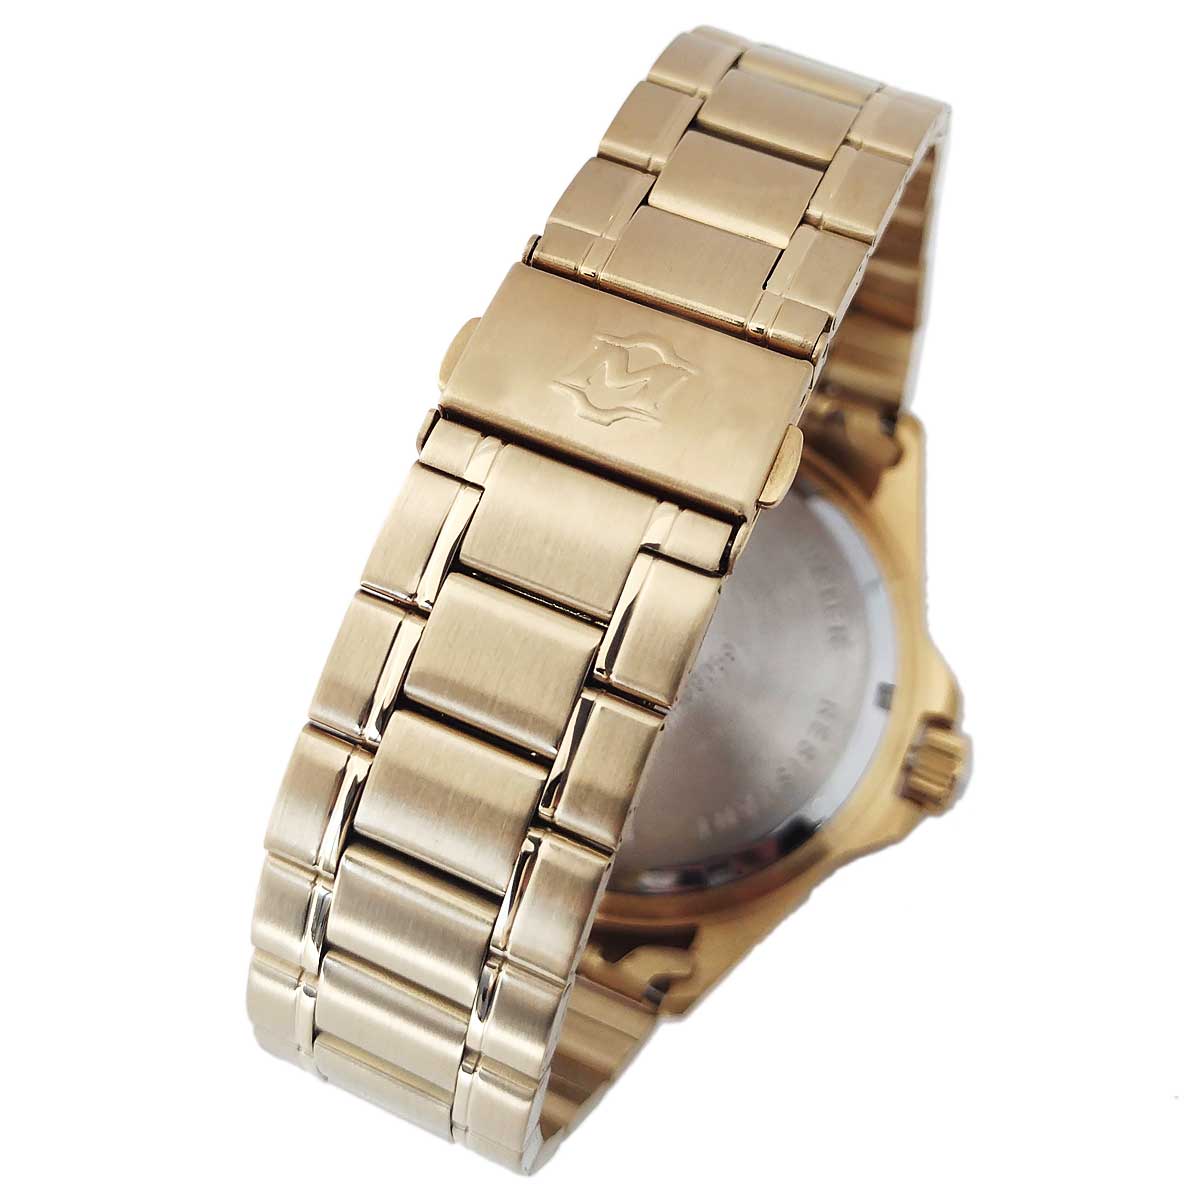 Relógio Masculino Magnum Dourado Original 2 Anos Garantia